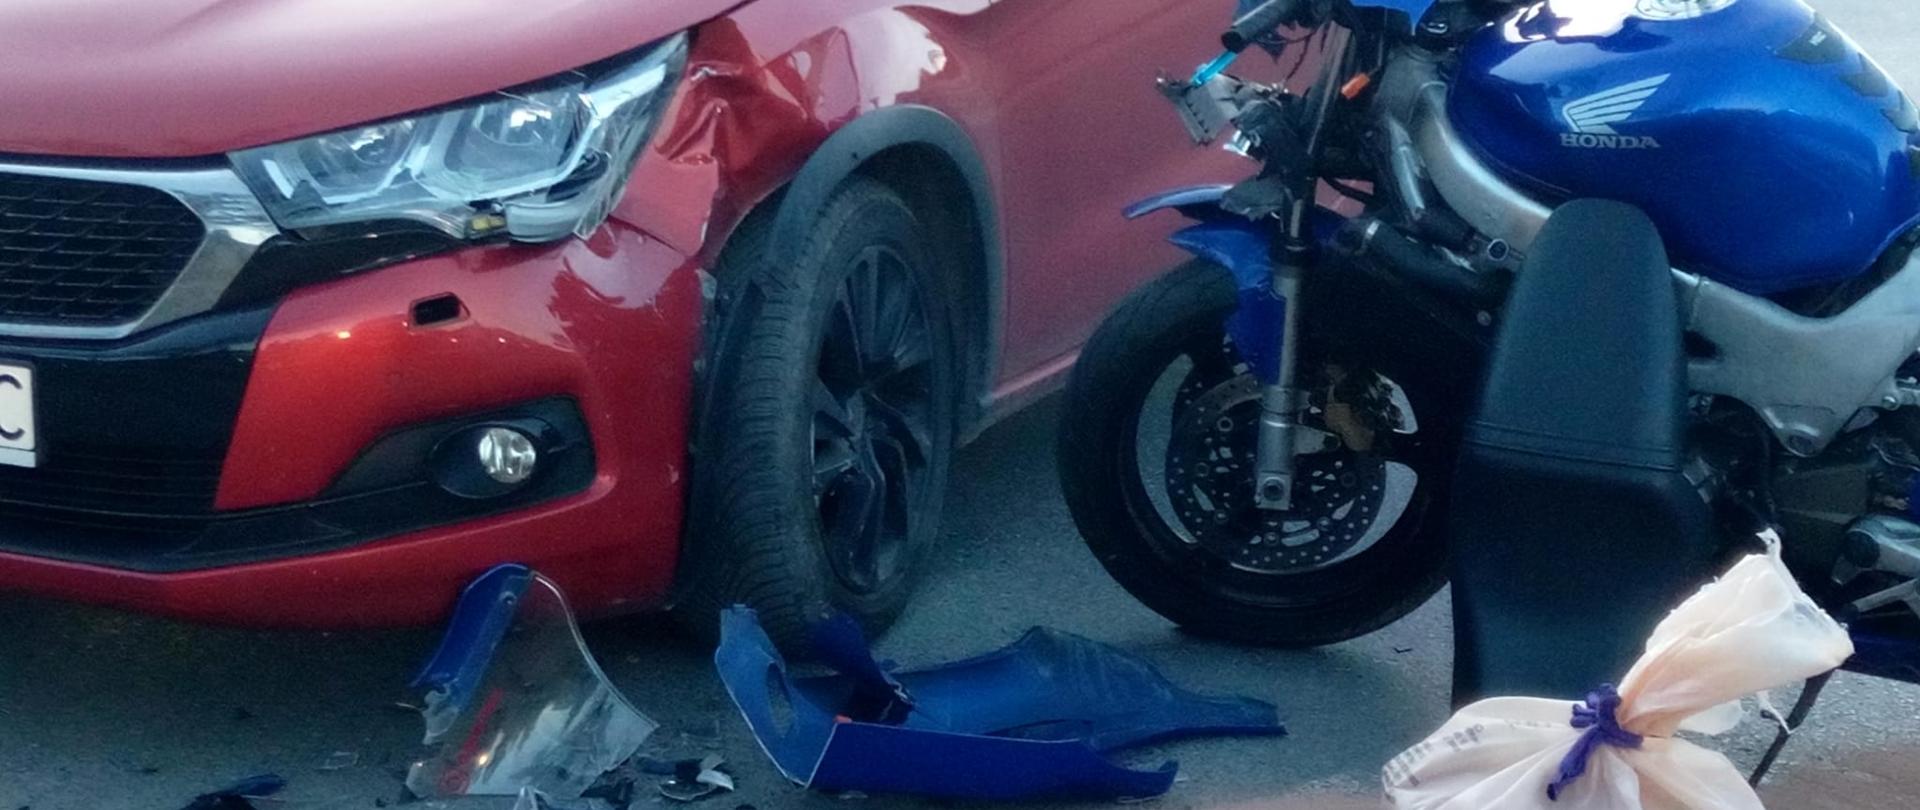 Zdjęcie przedstawia oba pojazdy biorące udział w zderzeniu. Po lewej stoi czerwony samochód osobowy zaś po prawej, prostopadle do auta motocykl Honda. Na ziemi leżą fragmenty zniszczonego jednośladu.